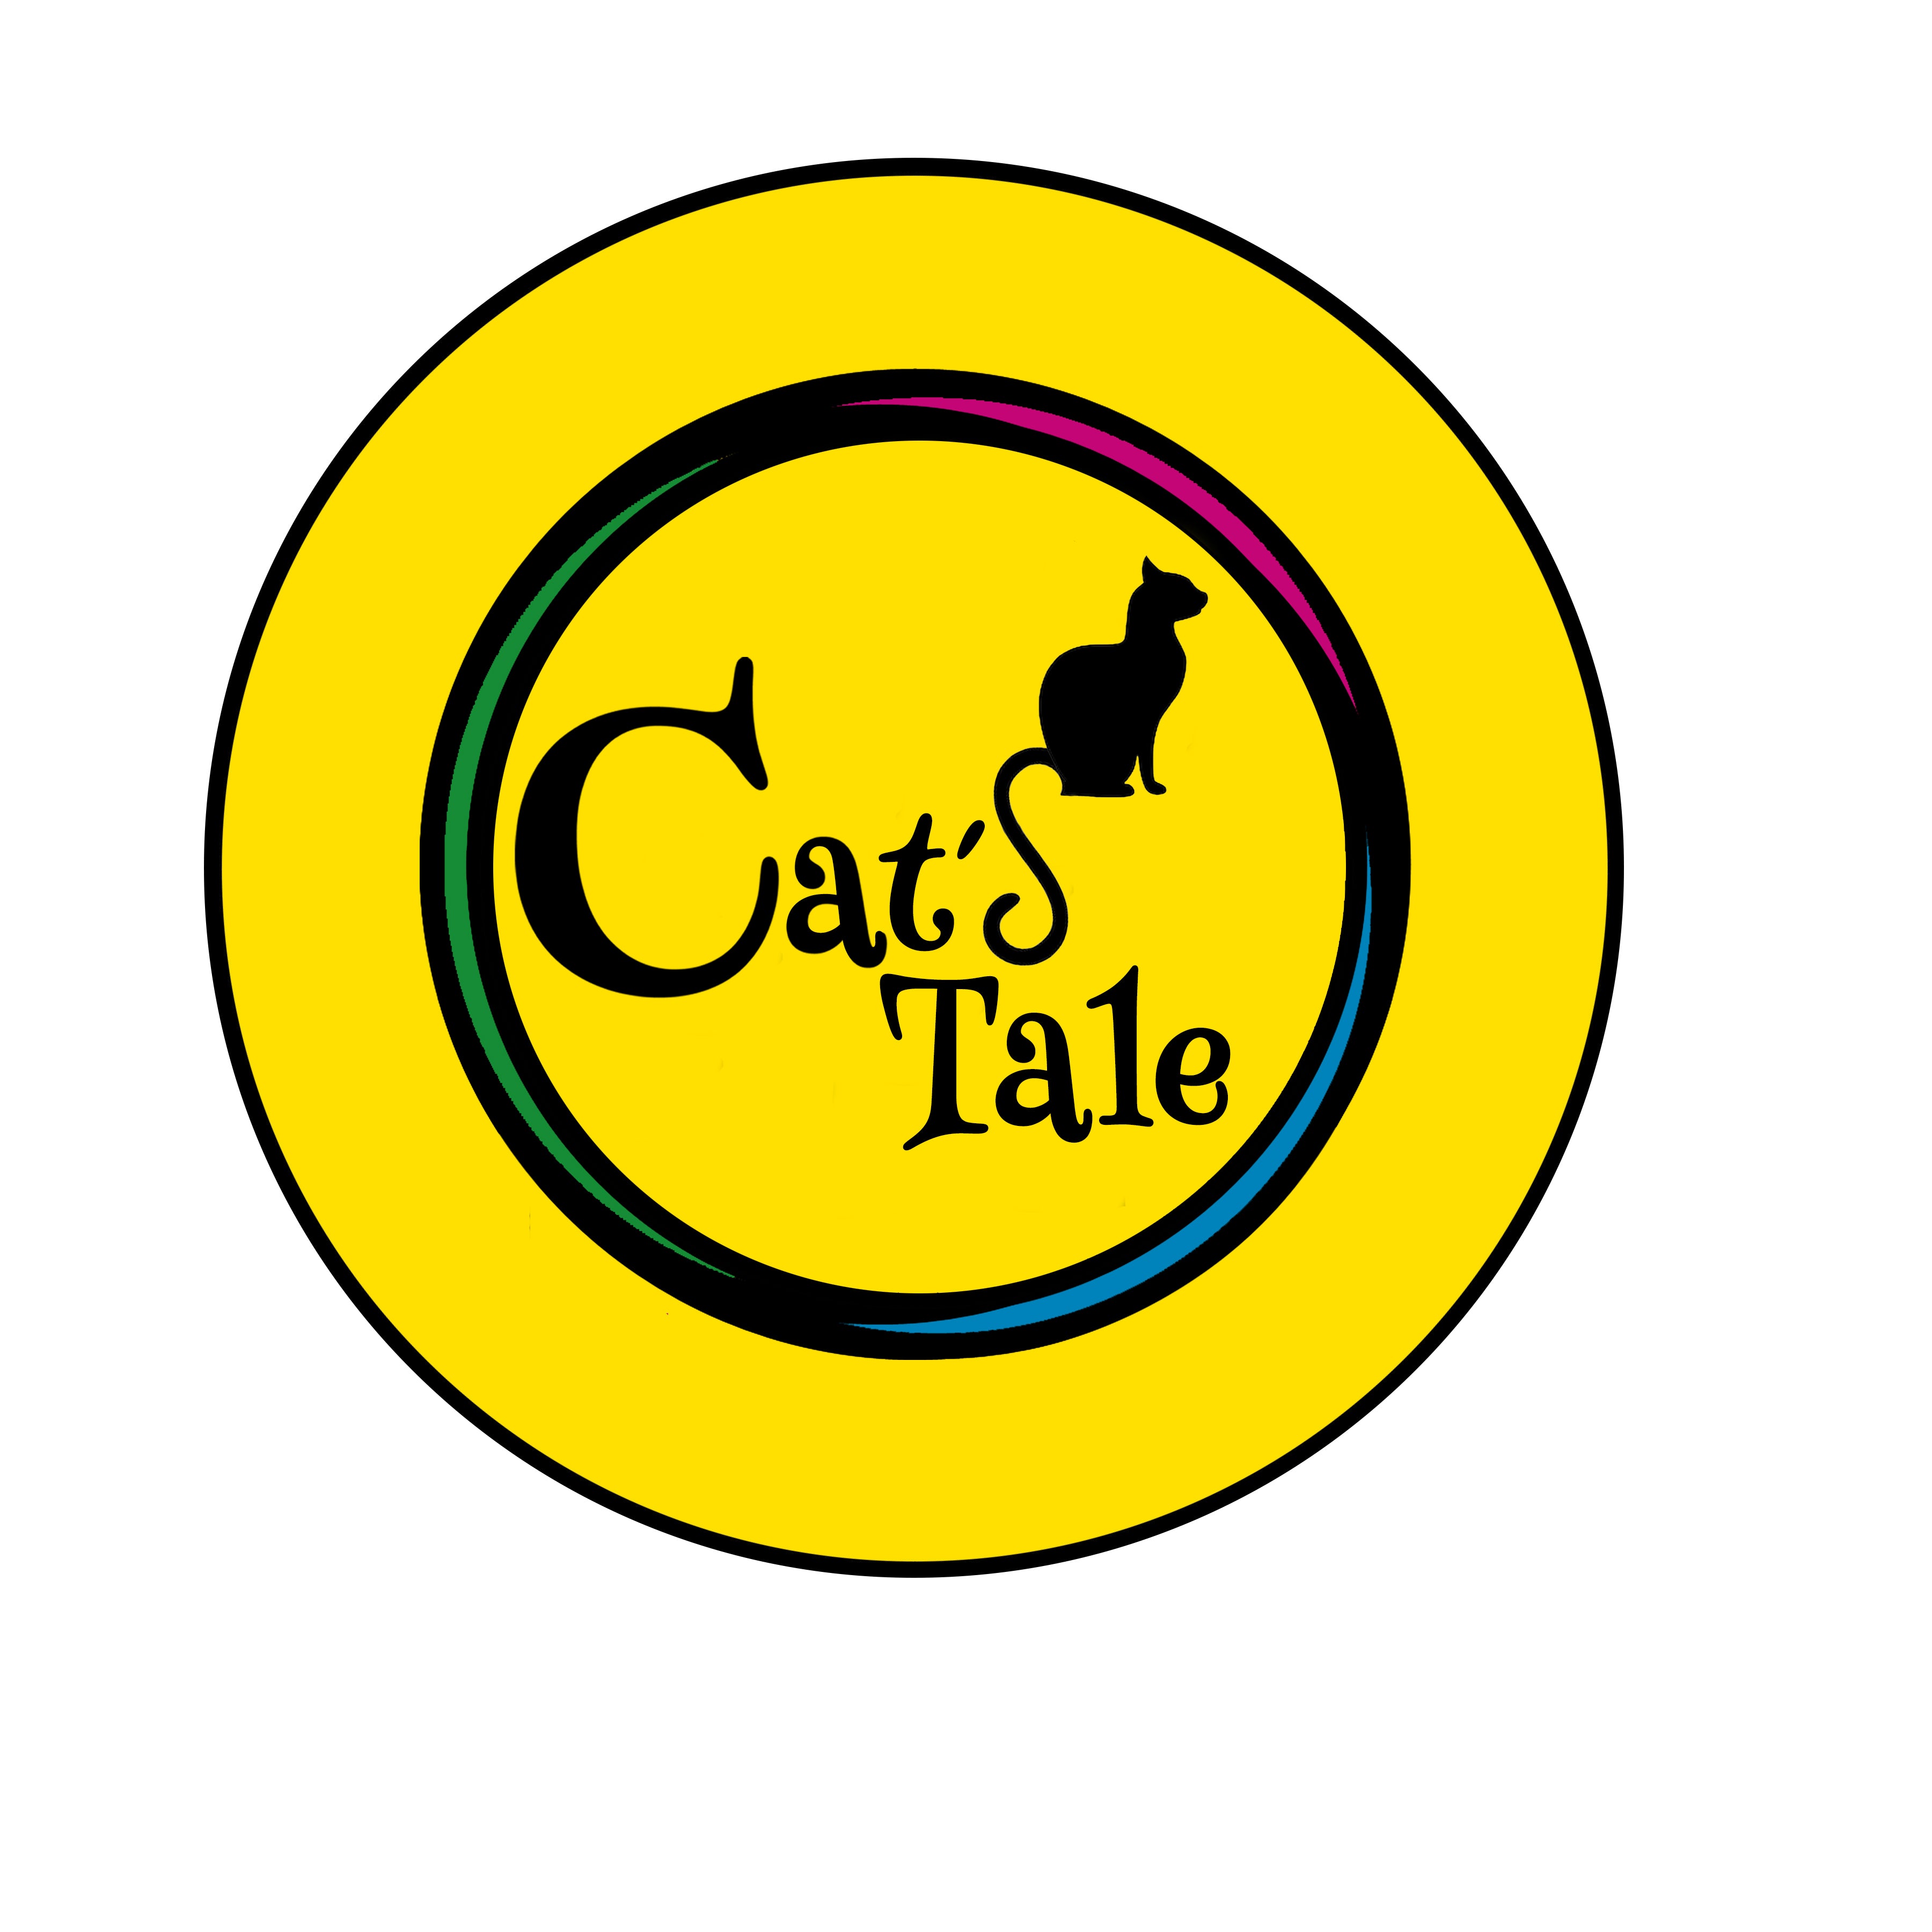 Cat's Tale